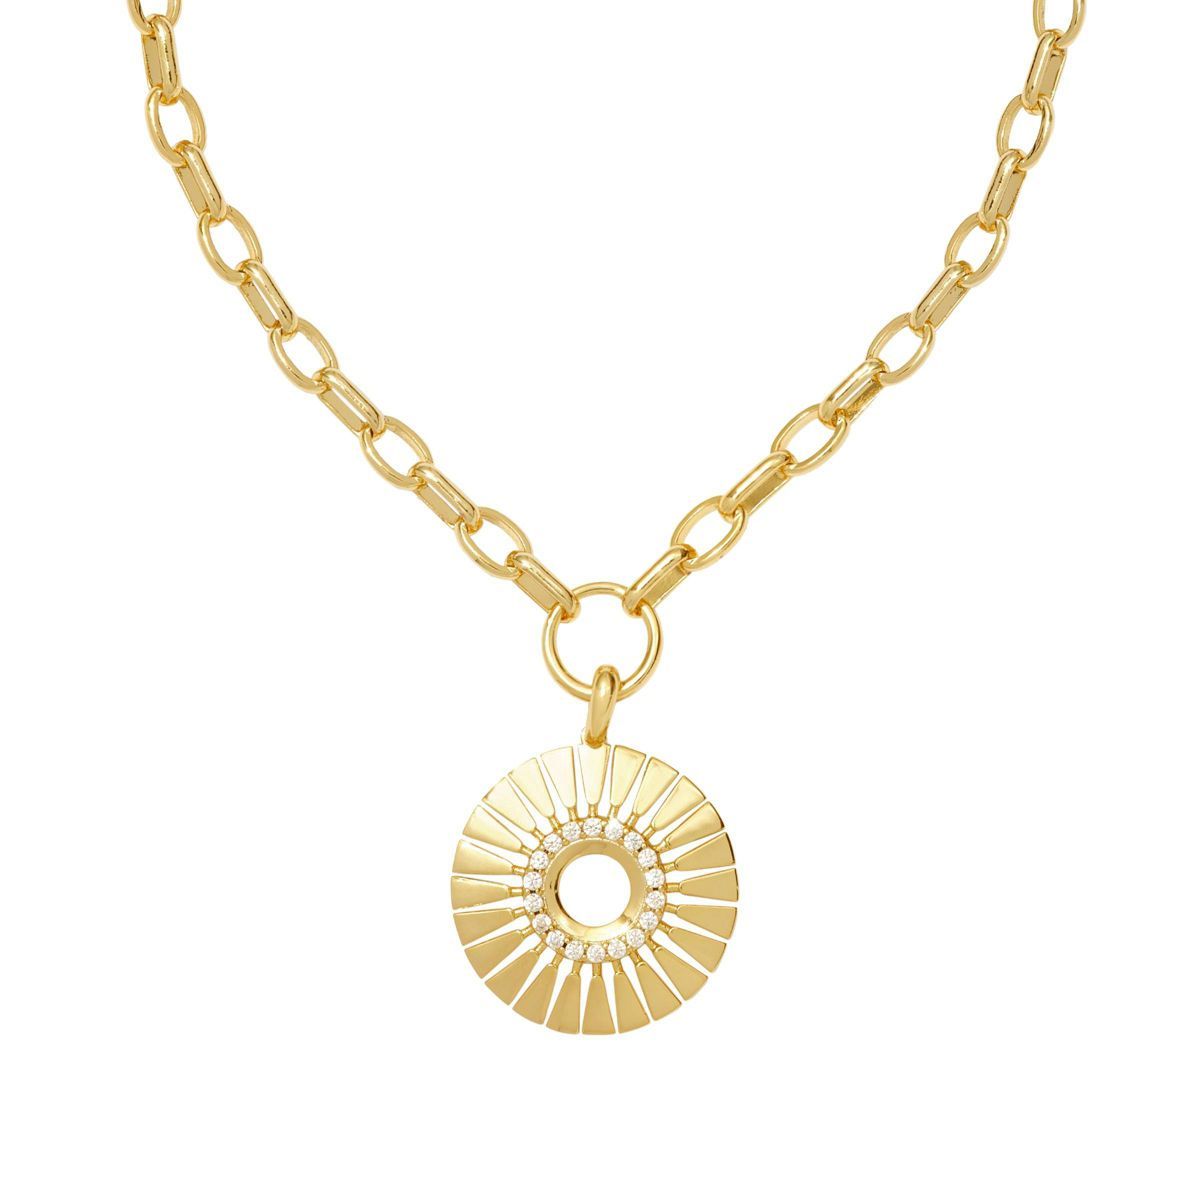 Kendra Scott Hattie Chain Necklace - Gold | Target